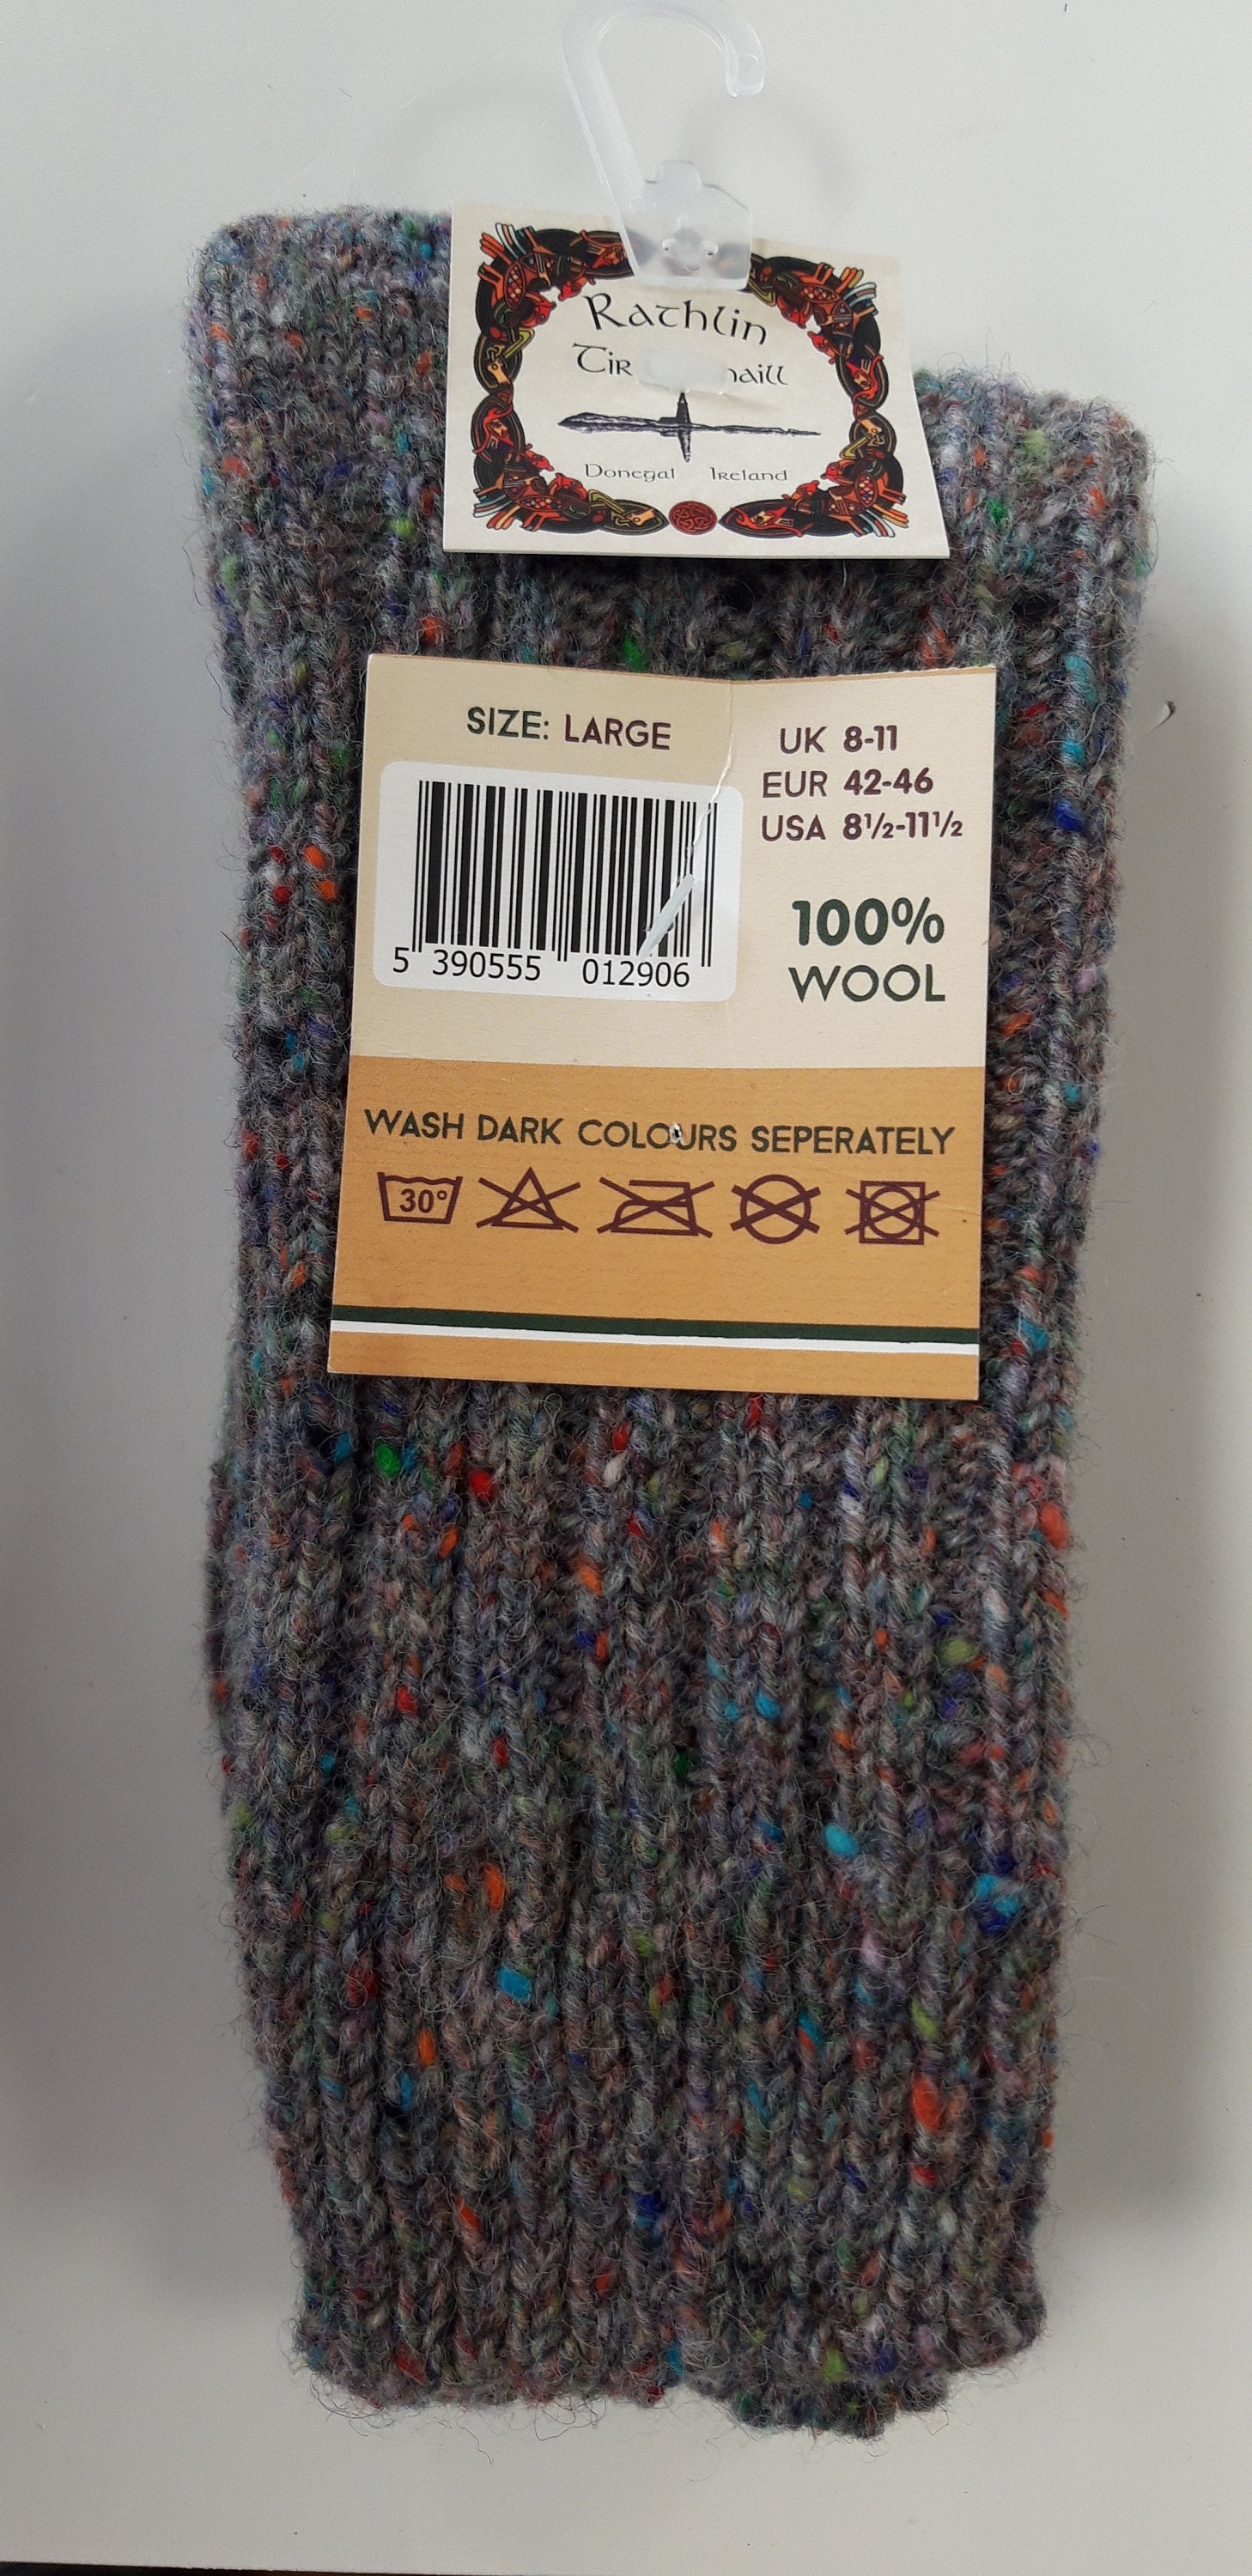 Donegal Socken Aus 100% Wolle von RATHLINKNITWEAR